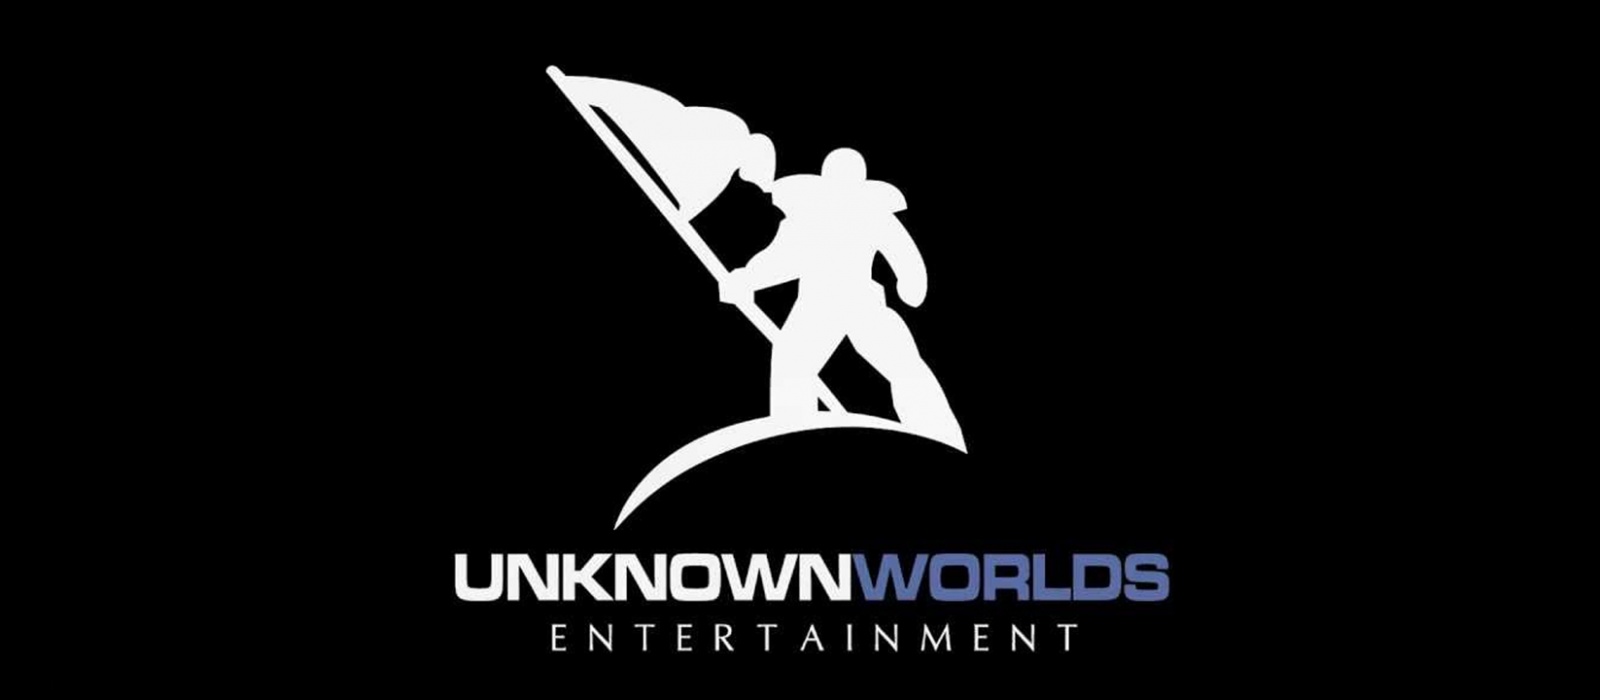 Around unknown. Unknown Worlds. Unknown Worlds Entertainment. Unknown Worlds Entertainment logo. Unknown Unknown.